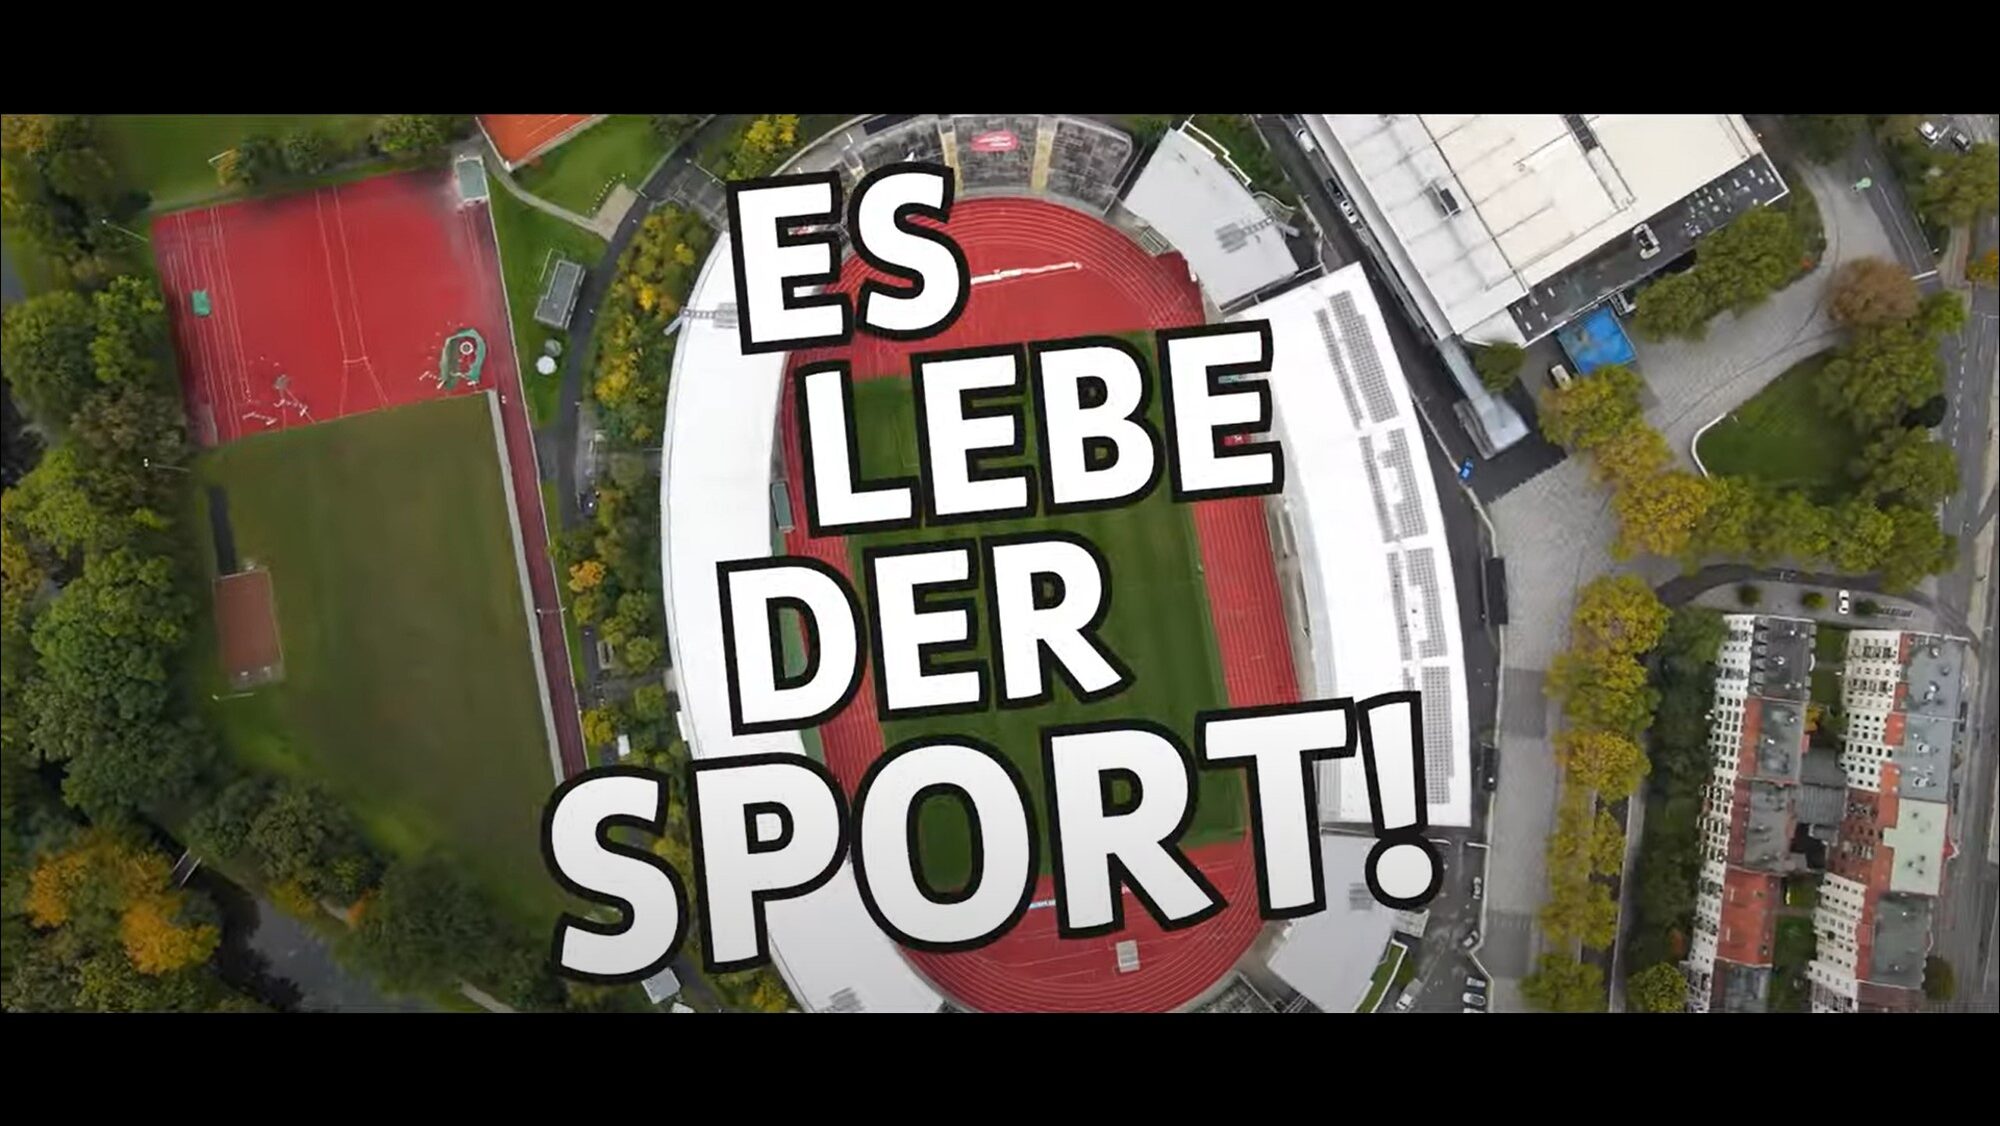 Imagefilm zur Sonderausstellung "Es lebe der Sport!" des Stadtmuseums